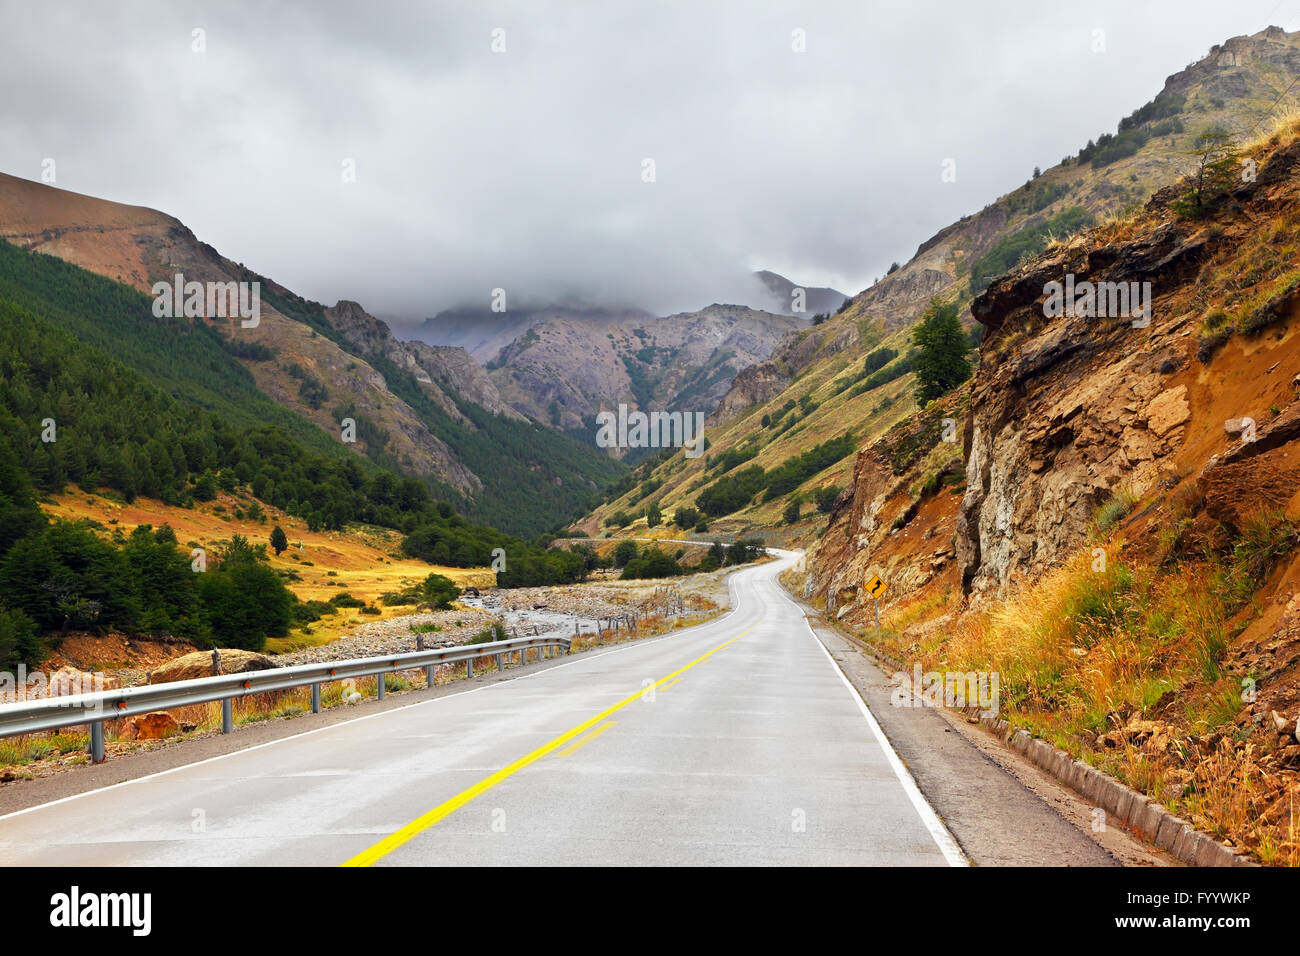 Carretera Austral - route dans la Patagonie Chilienne Banque D'Images